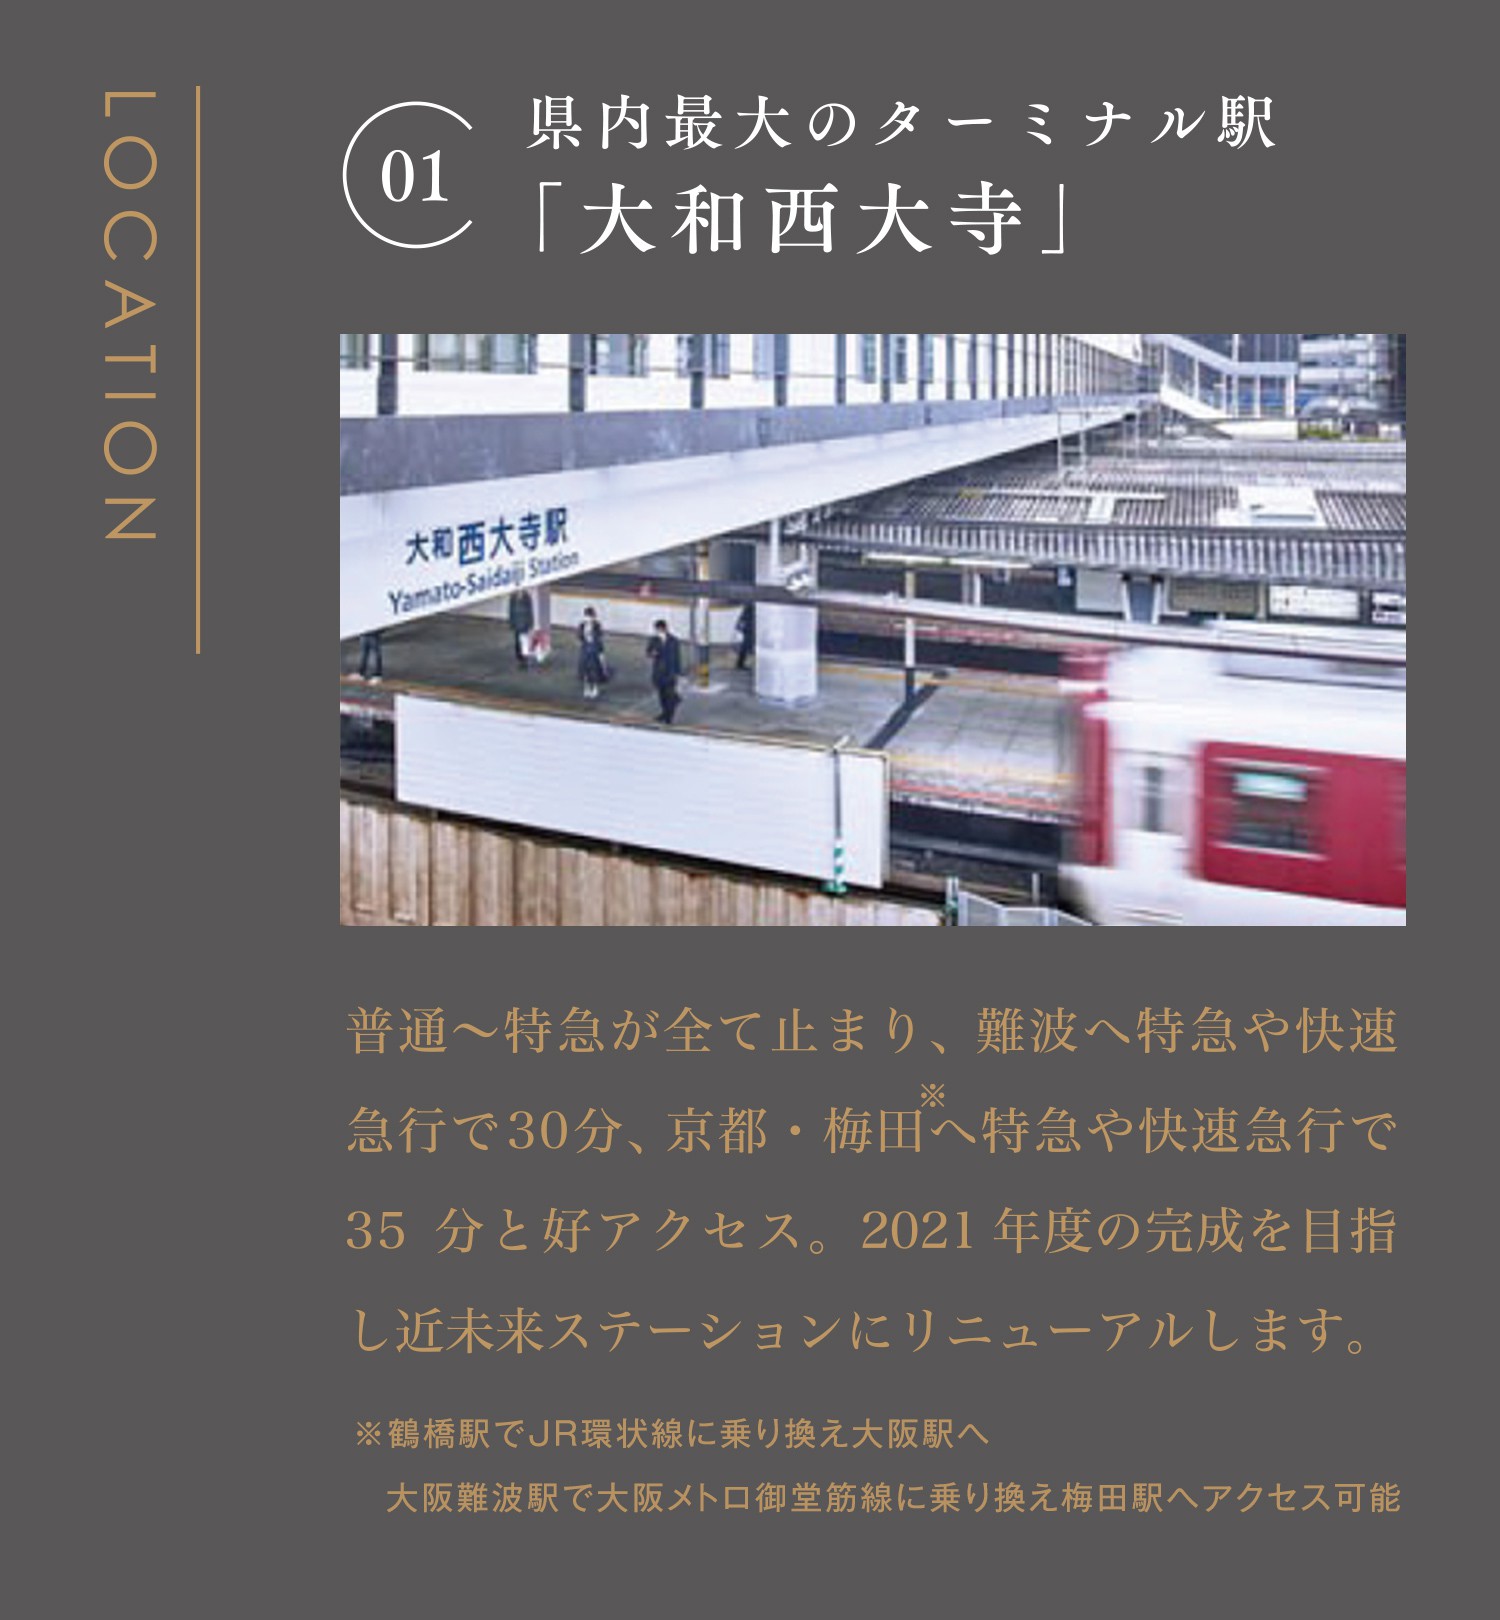 県内最大のターミナル駅「大和西大寺」